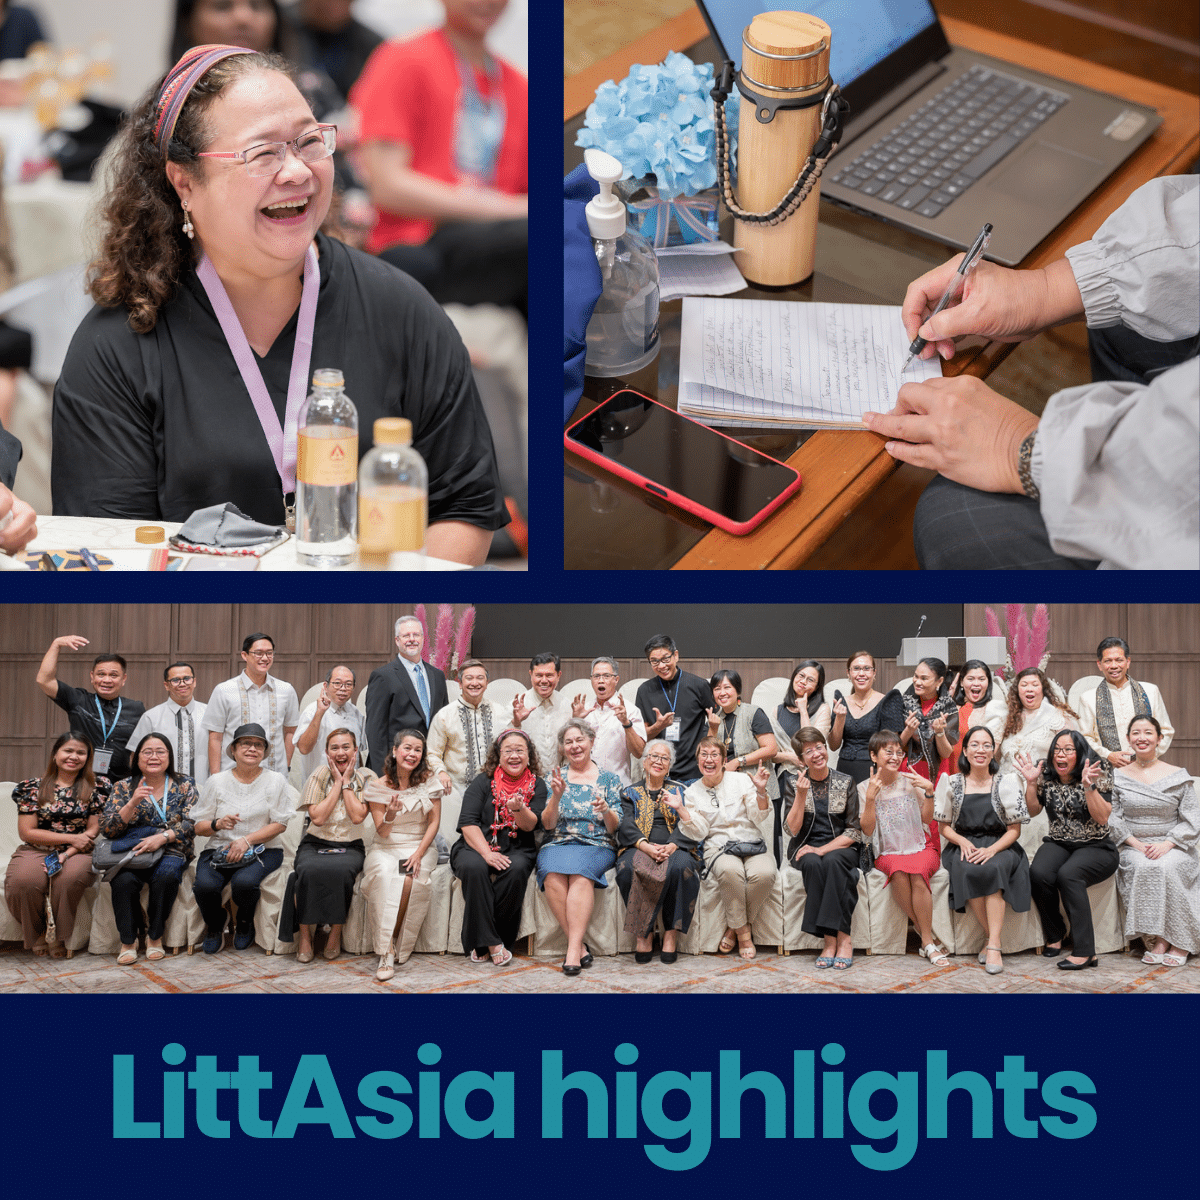 LittAsia highlights